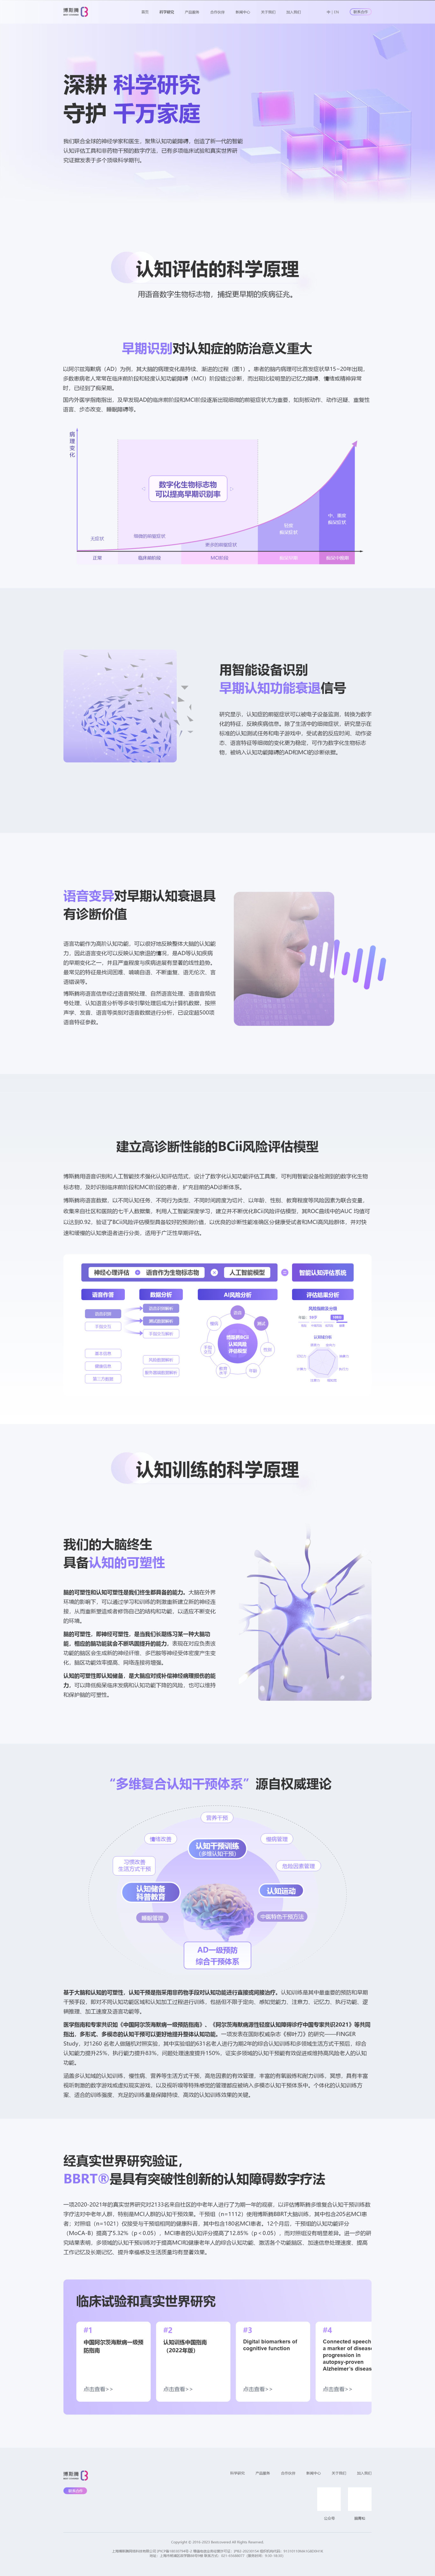 博斯騰官方網站設計圖1